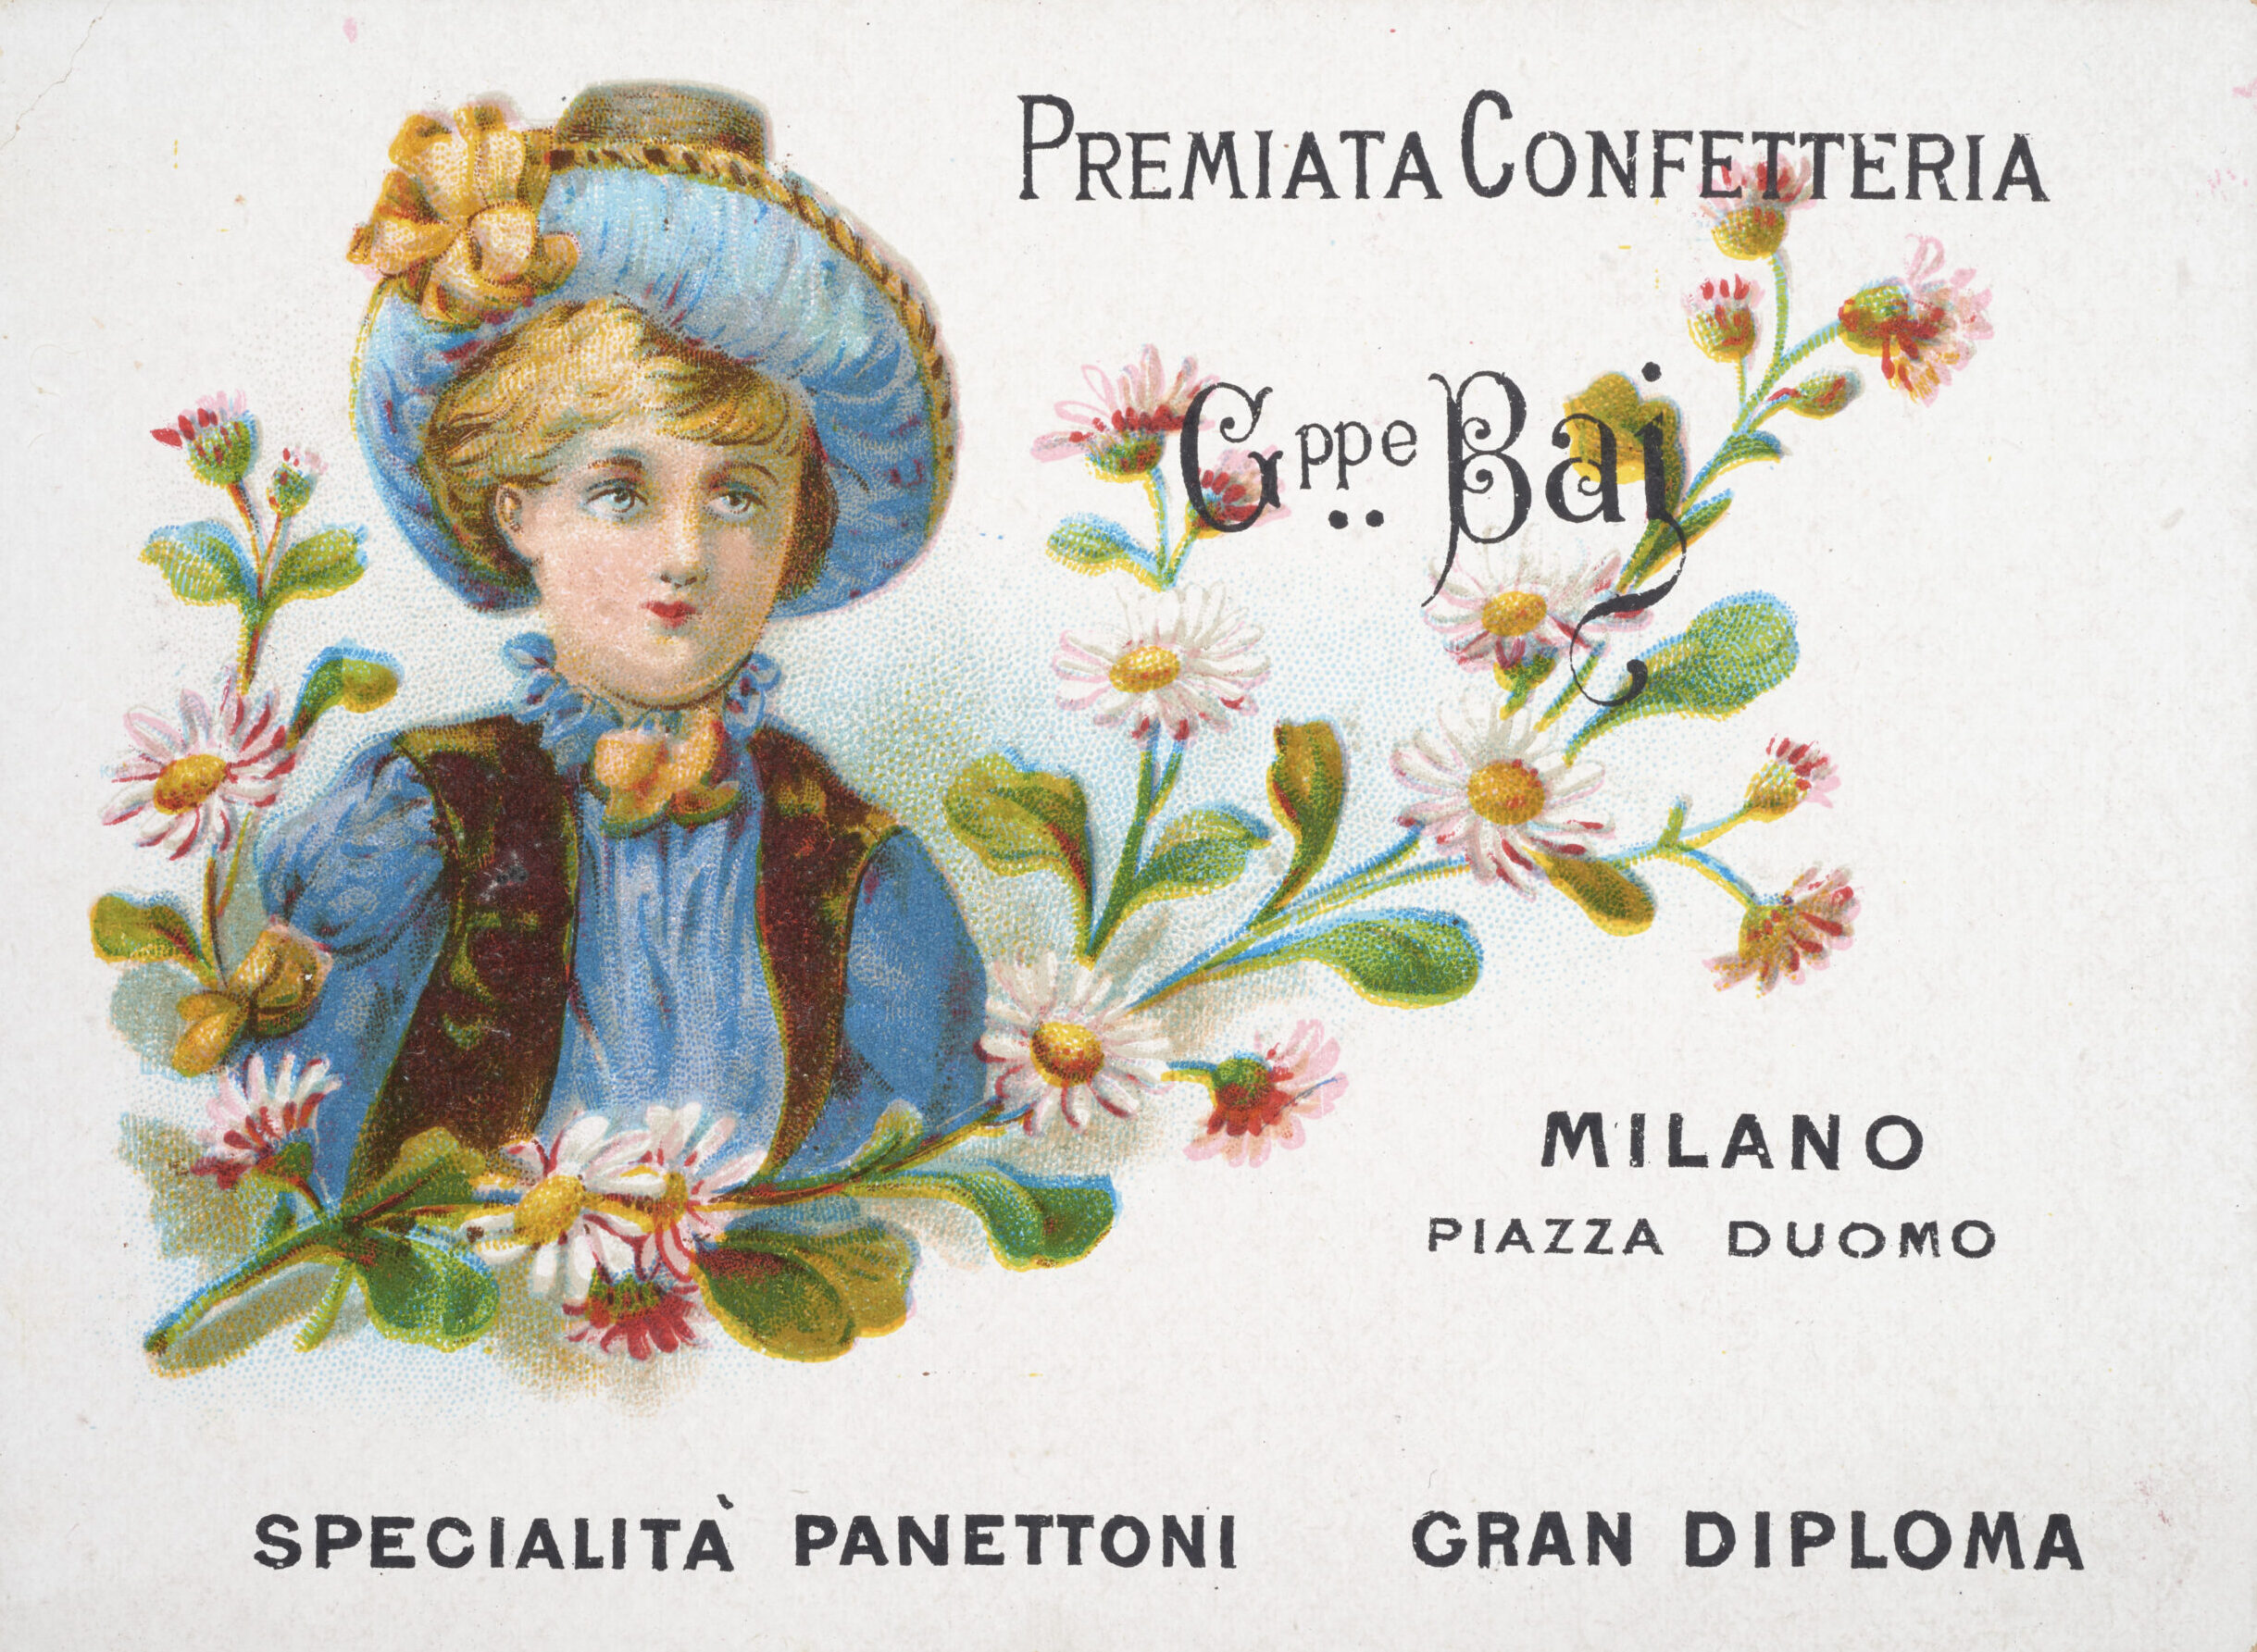 Cartolina Premiata Confetteria Giuseppe Baj – Milano – Piazza Duomo